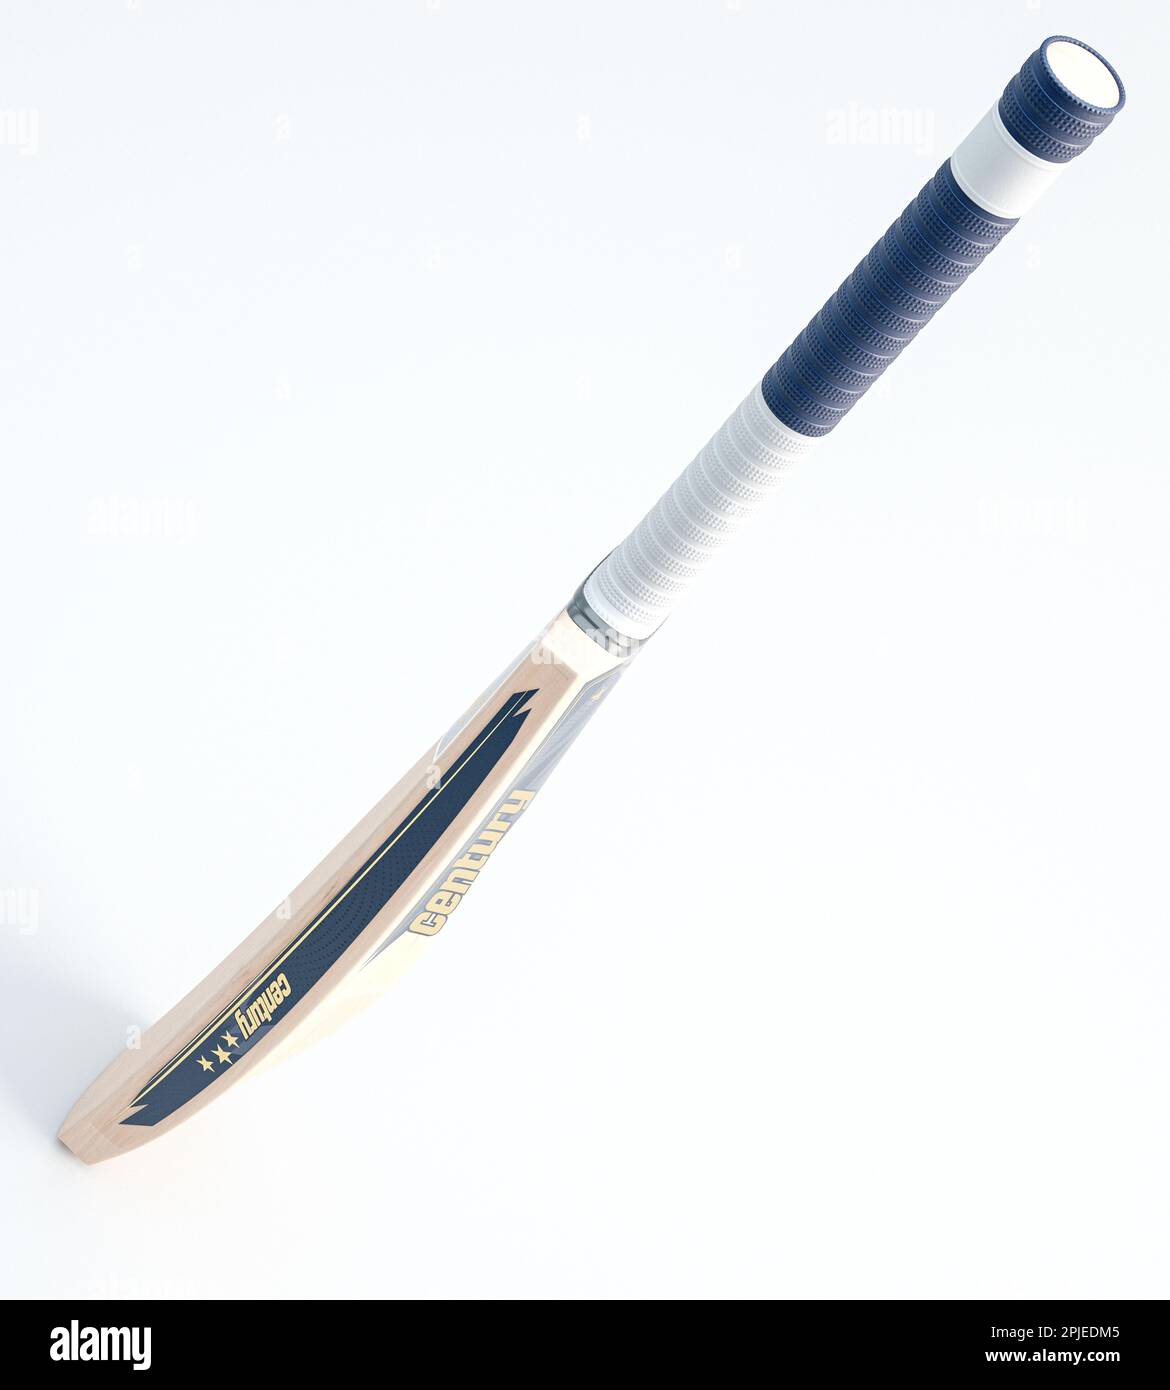 Un moderno pipistrello in legno con decalcomanie generiche di marca su uno sfondo bianco isolato - rendering 3D Foto Stock